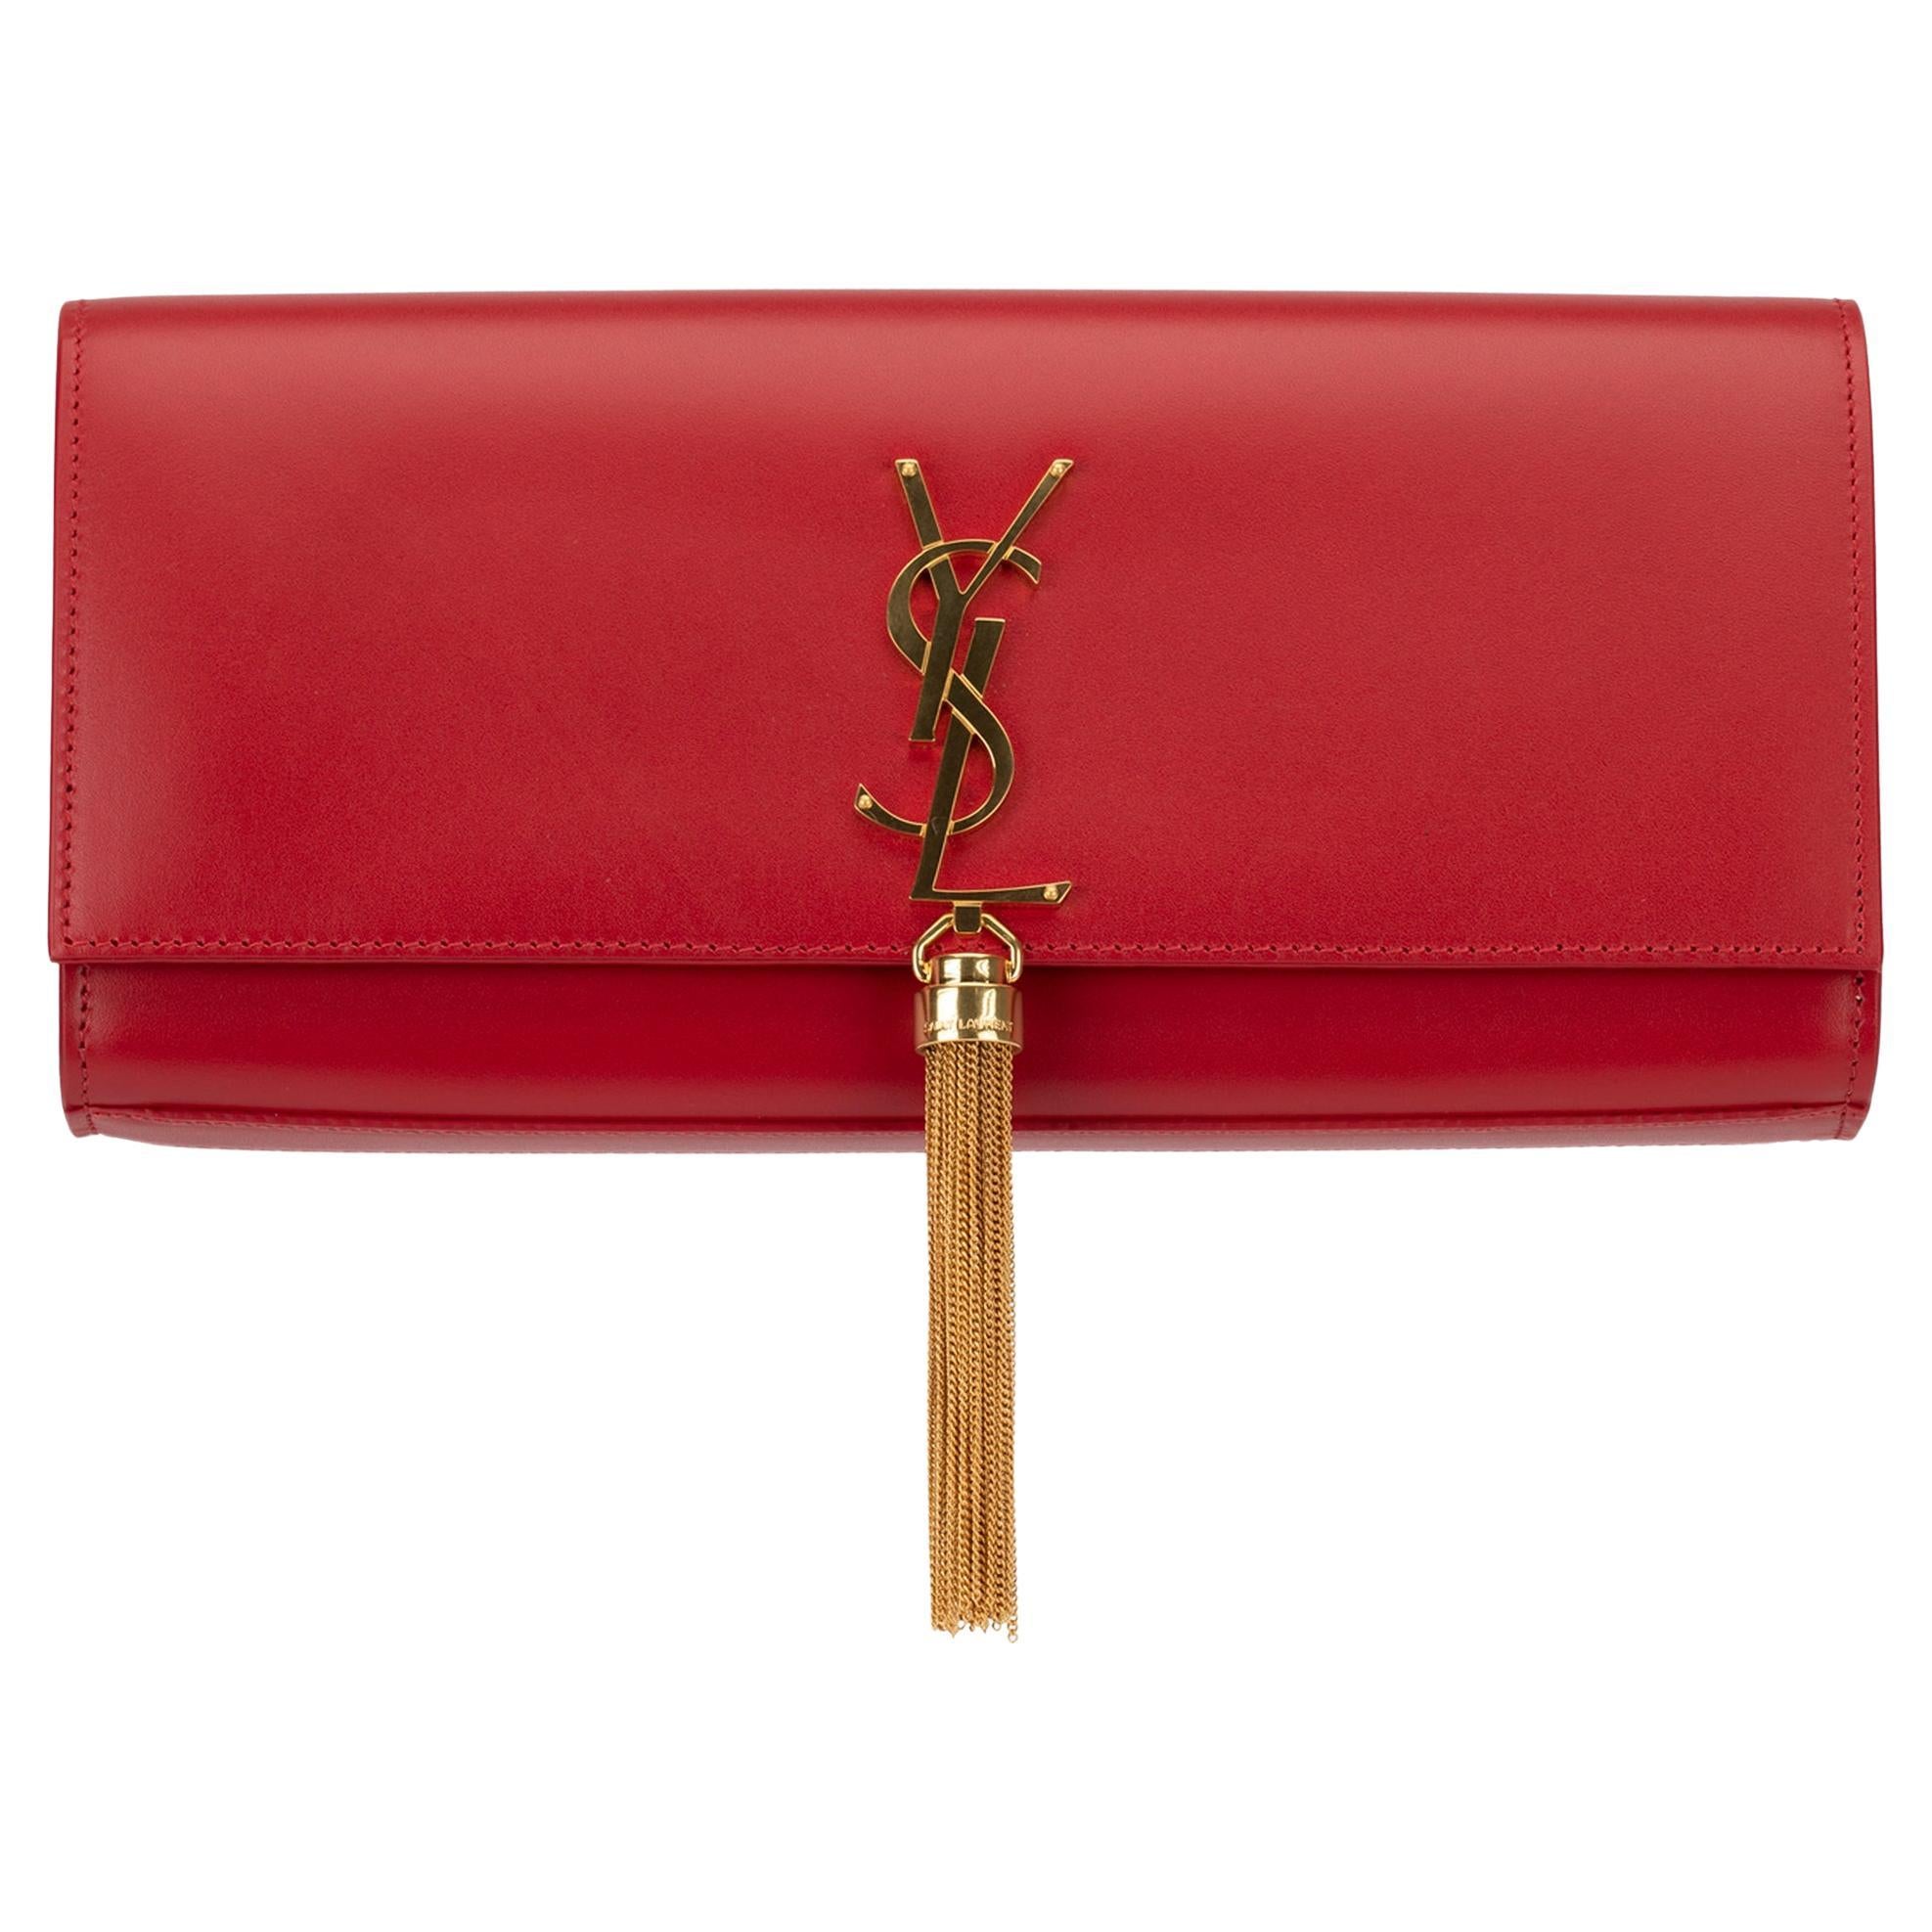 Yves Saint Laurent - Pochette Kate en cuir lisse rouge avec détails dorés